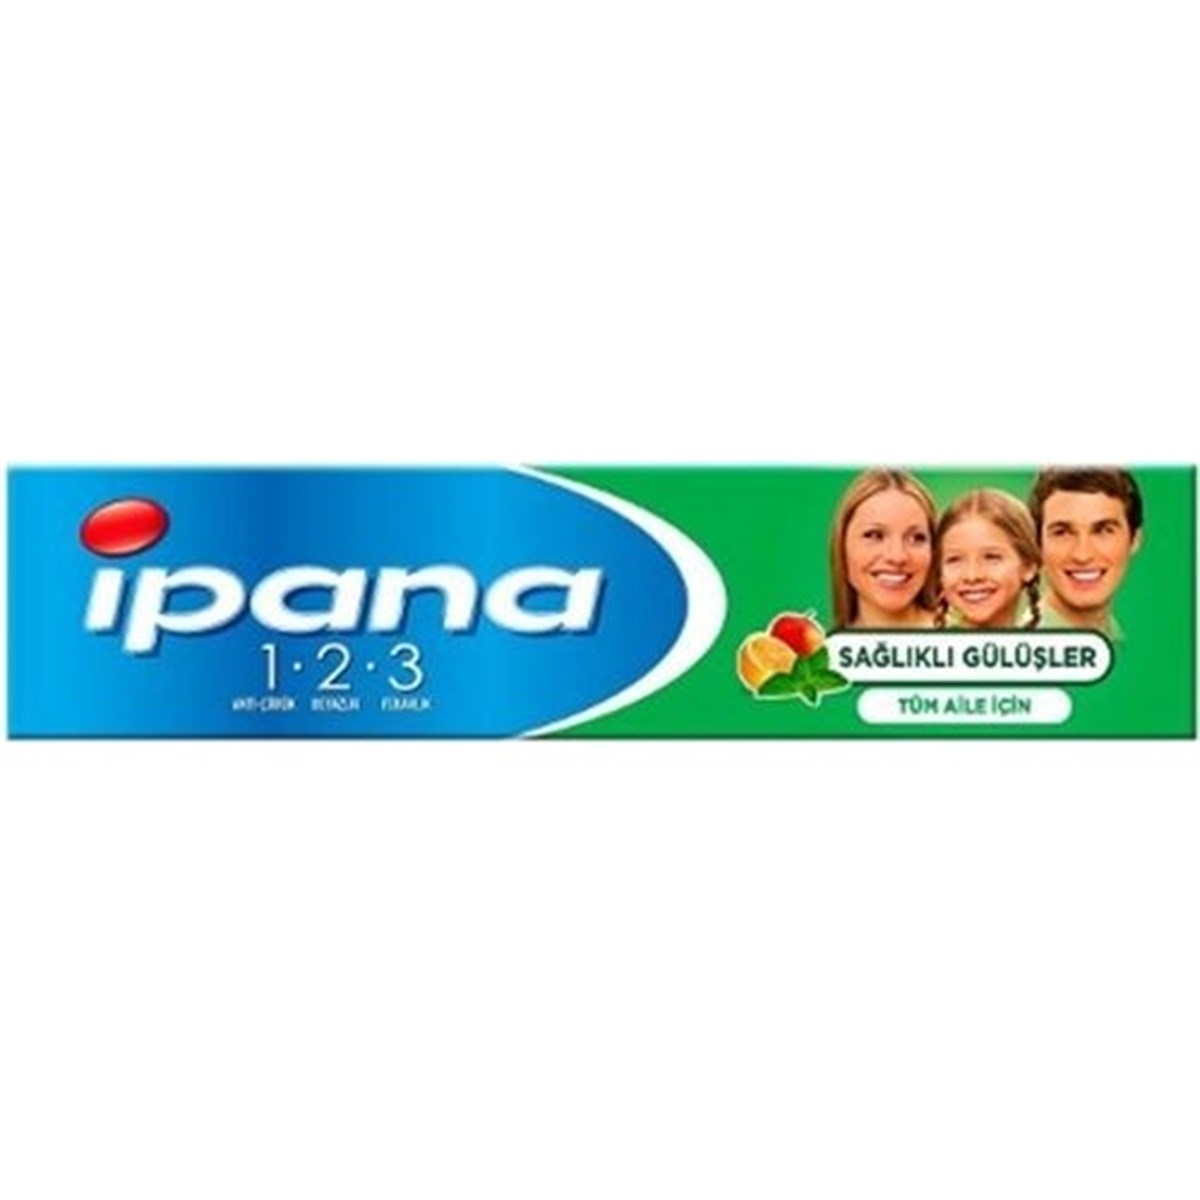 İpana 1 2 3 Sağlıklı Gülüşler Diş Macunu 50 ml-LeylekKapıda.com